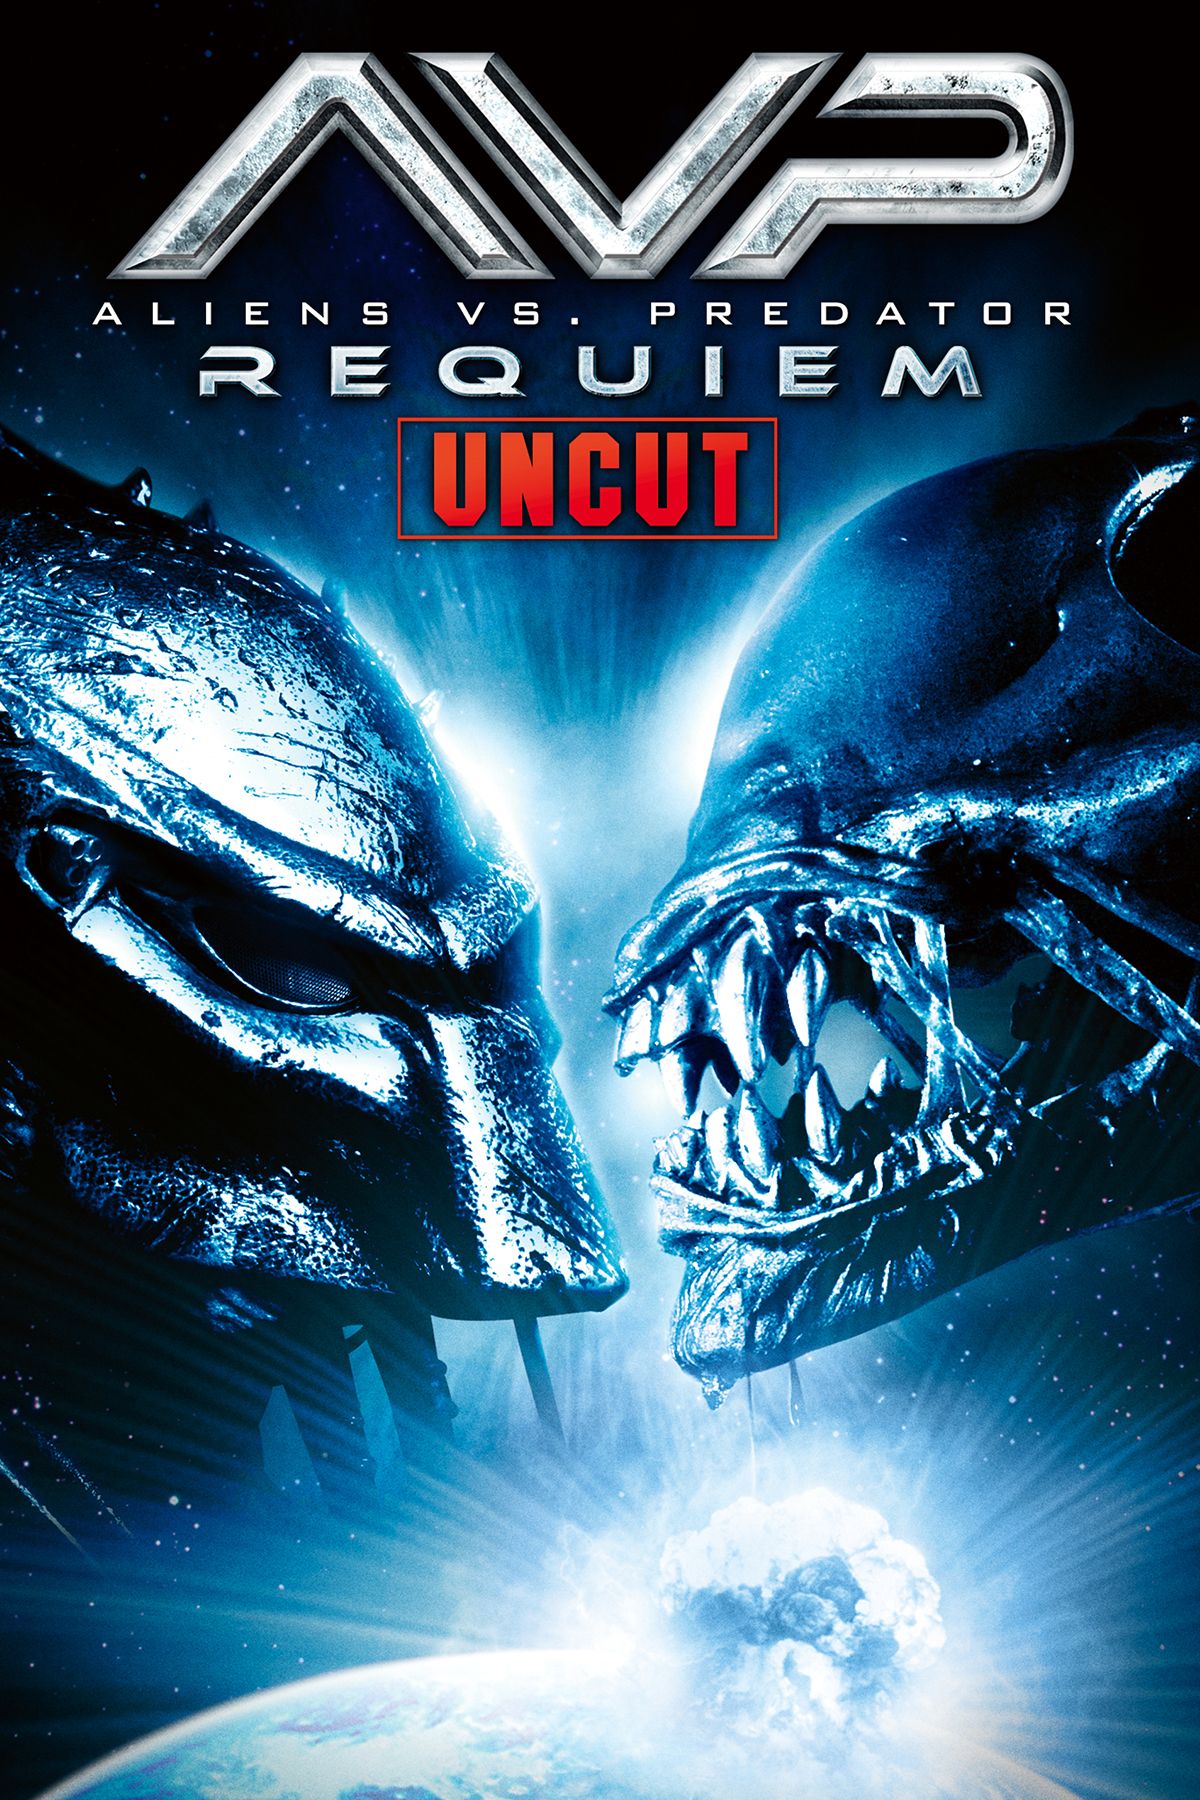 Alien vs Predator, sci-fi, movie, avp, HD wallpaper